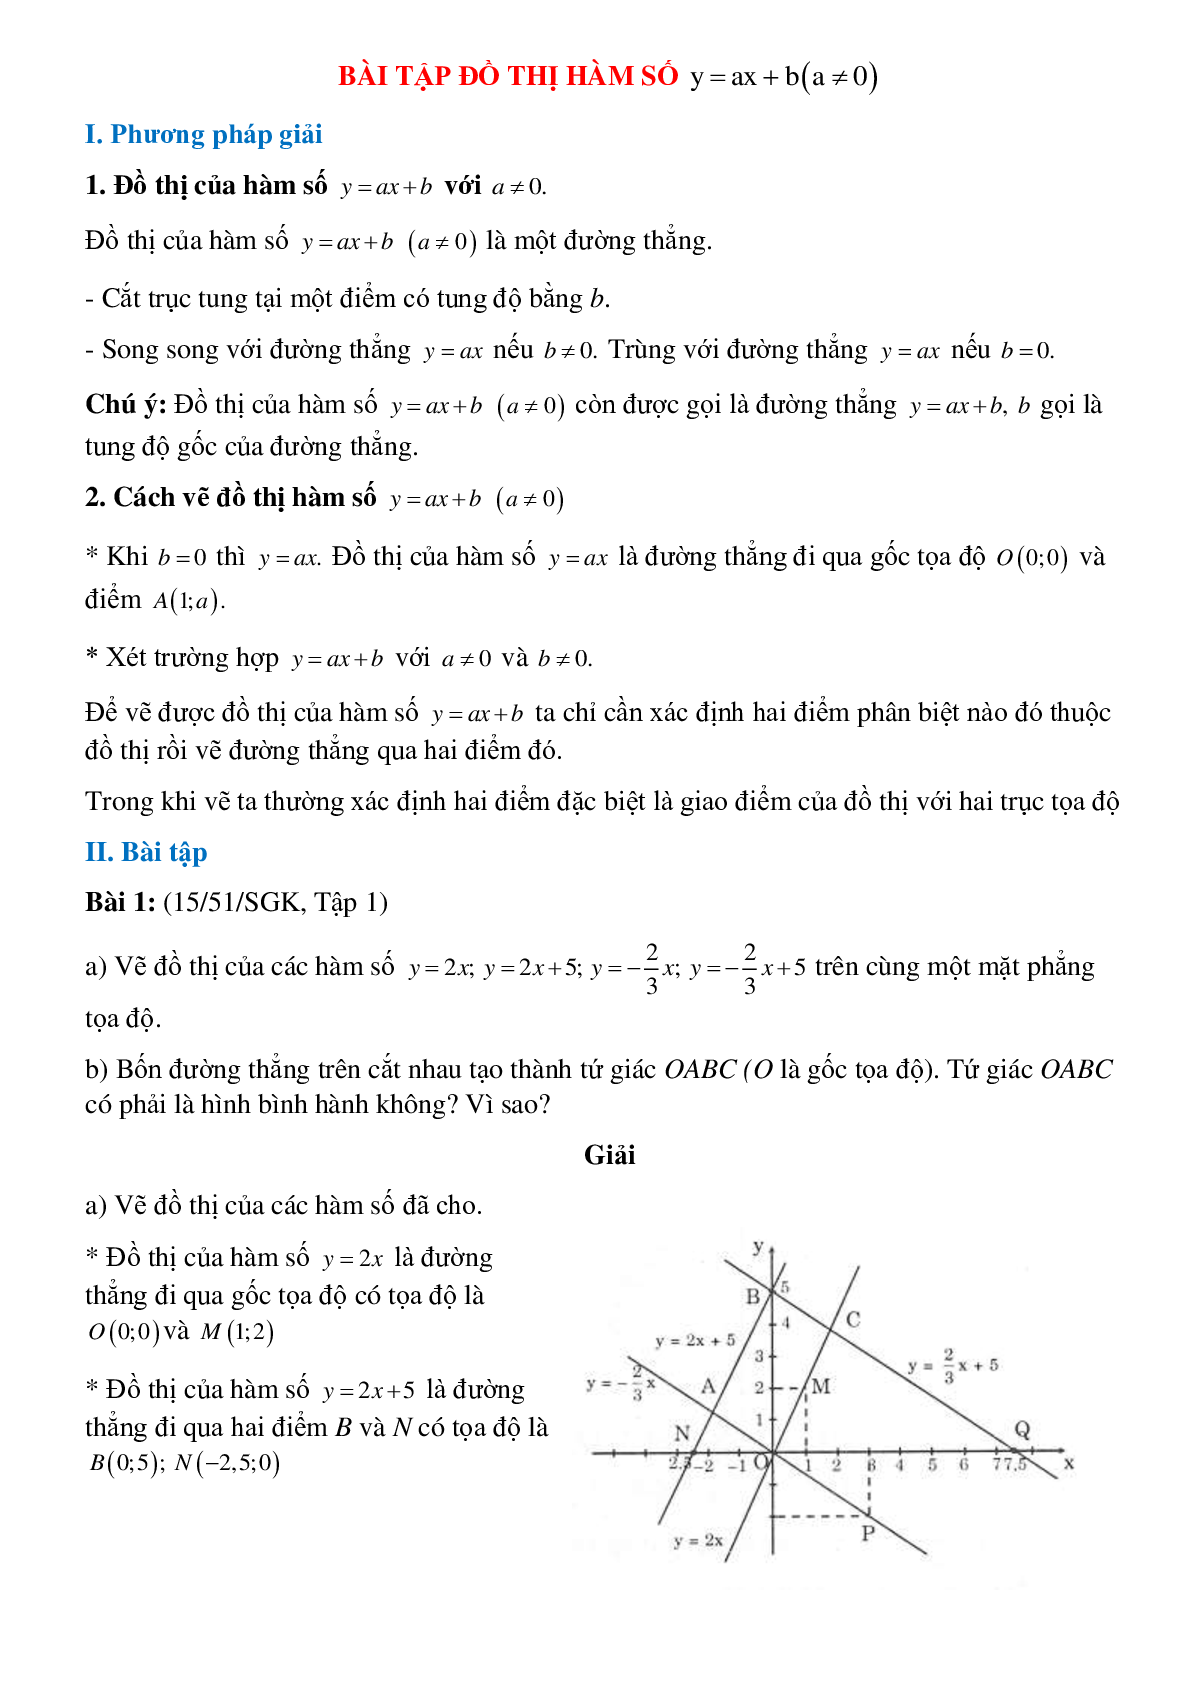 Bài tập Đồ thị hàm số Y=aX+b (trang 1)